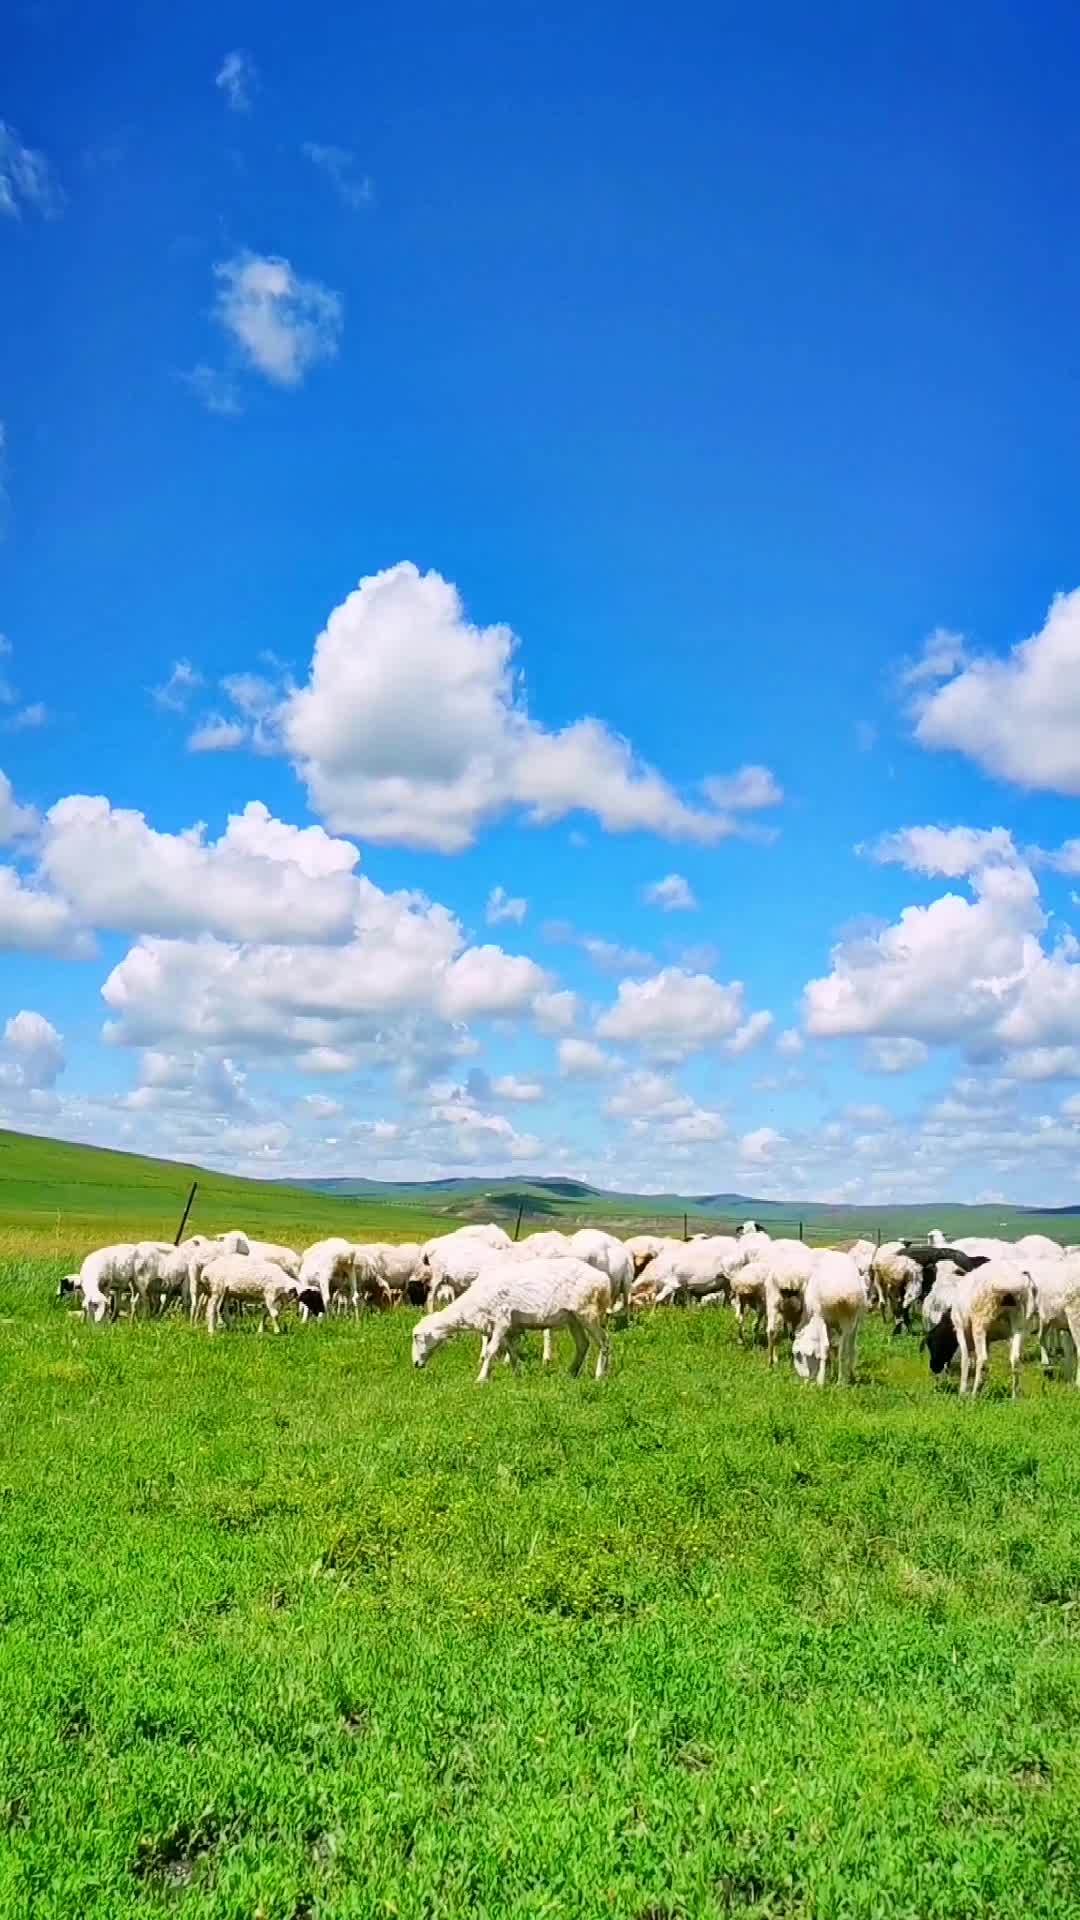 蓝天白云,牛羊成群,呼伦贝尔大草原太美了!